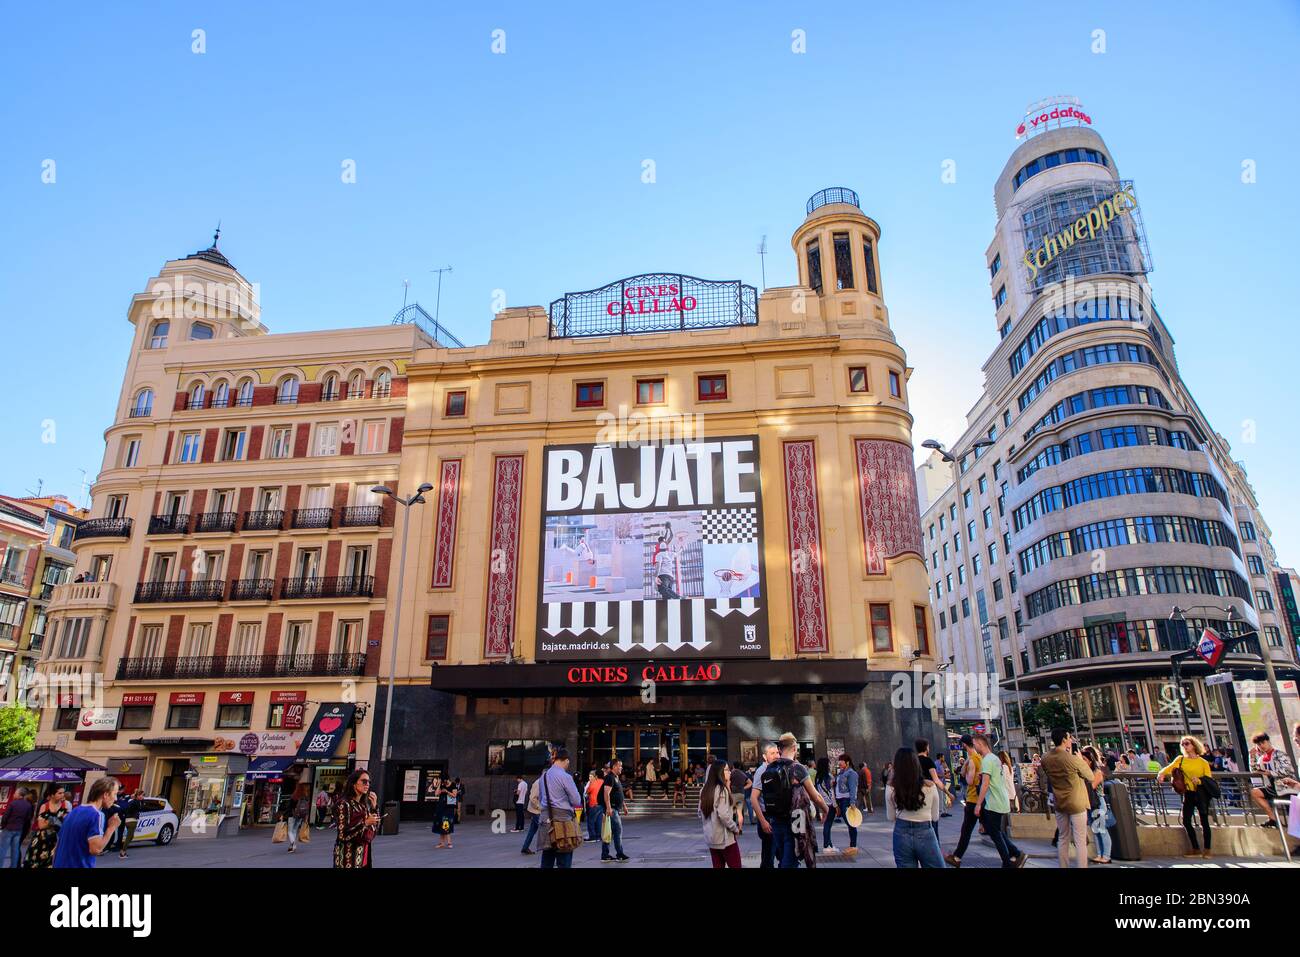 Plaza del Callao in Madrid, Spain Stock Photo